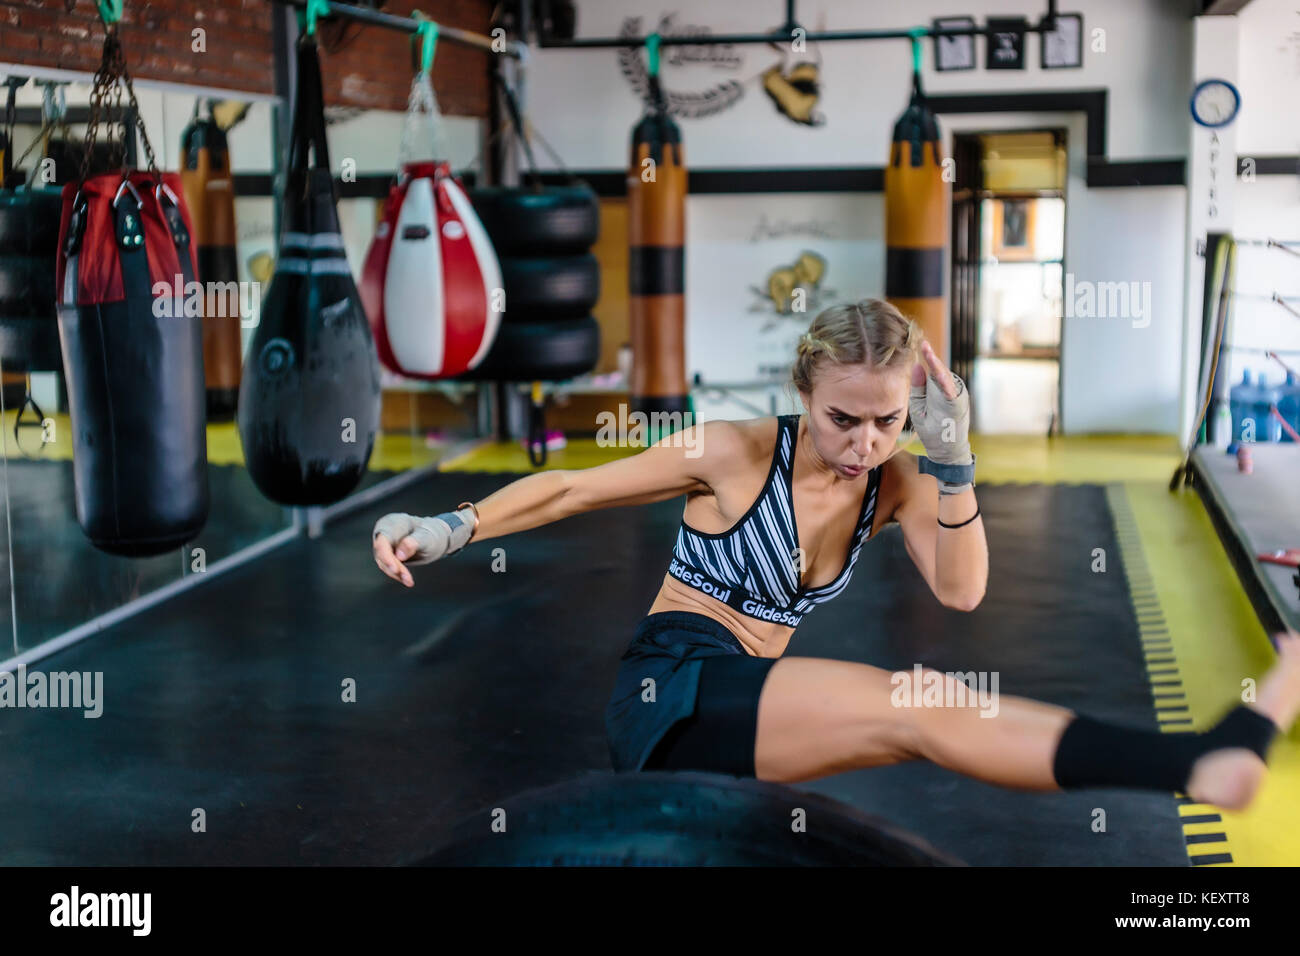 Fotografía de la mujer joven en el gimnasio patadas mientras practica kickboxing, Seminyak, Bali, Indonesia Foto de stock